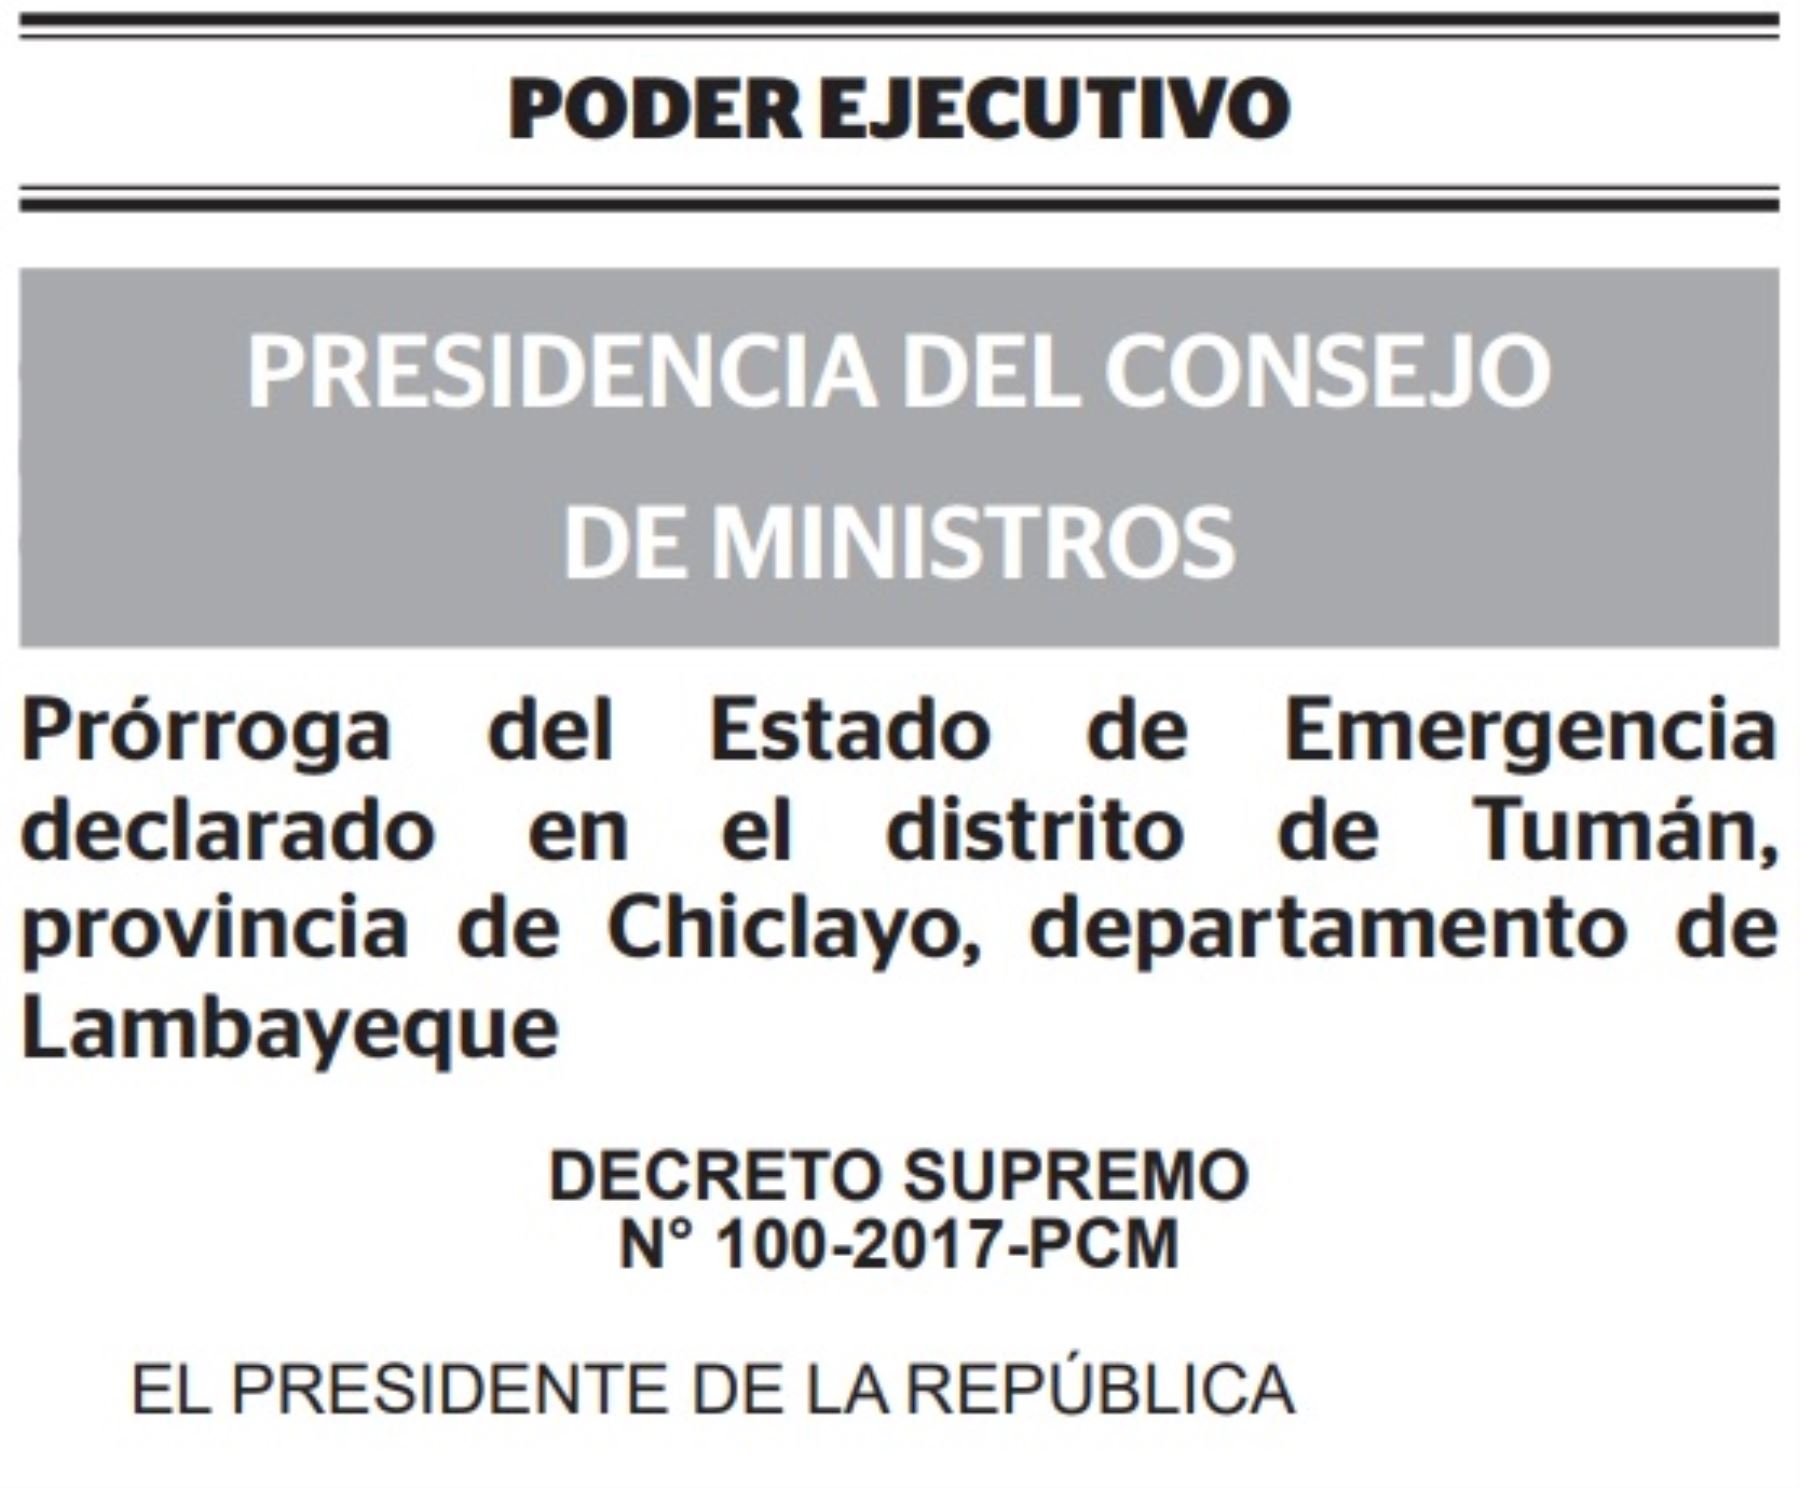 El Ejecutivo prorrogó el estado de emergencia en el distrito de Tumán, provincia de Chiclayo, departamento de Lambayeque, por el término de 30 días calendario a partir de mañana miércoles, plazo en el que la Policía Nacional del Perú mantendrá el control del orden interno, con el apoyo de las Fuerzas Armadas.